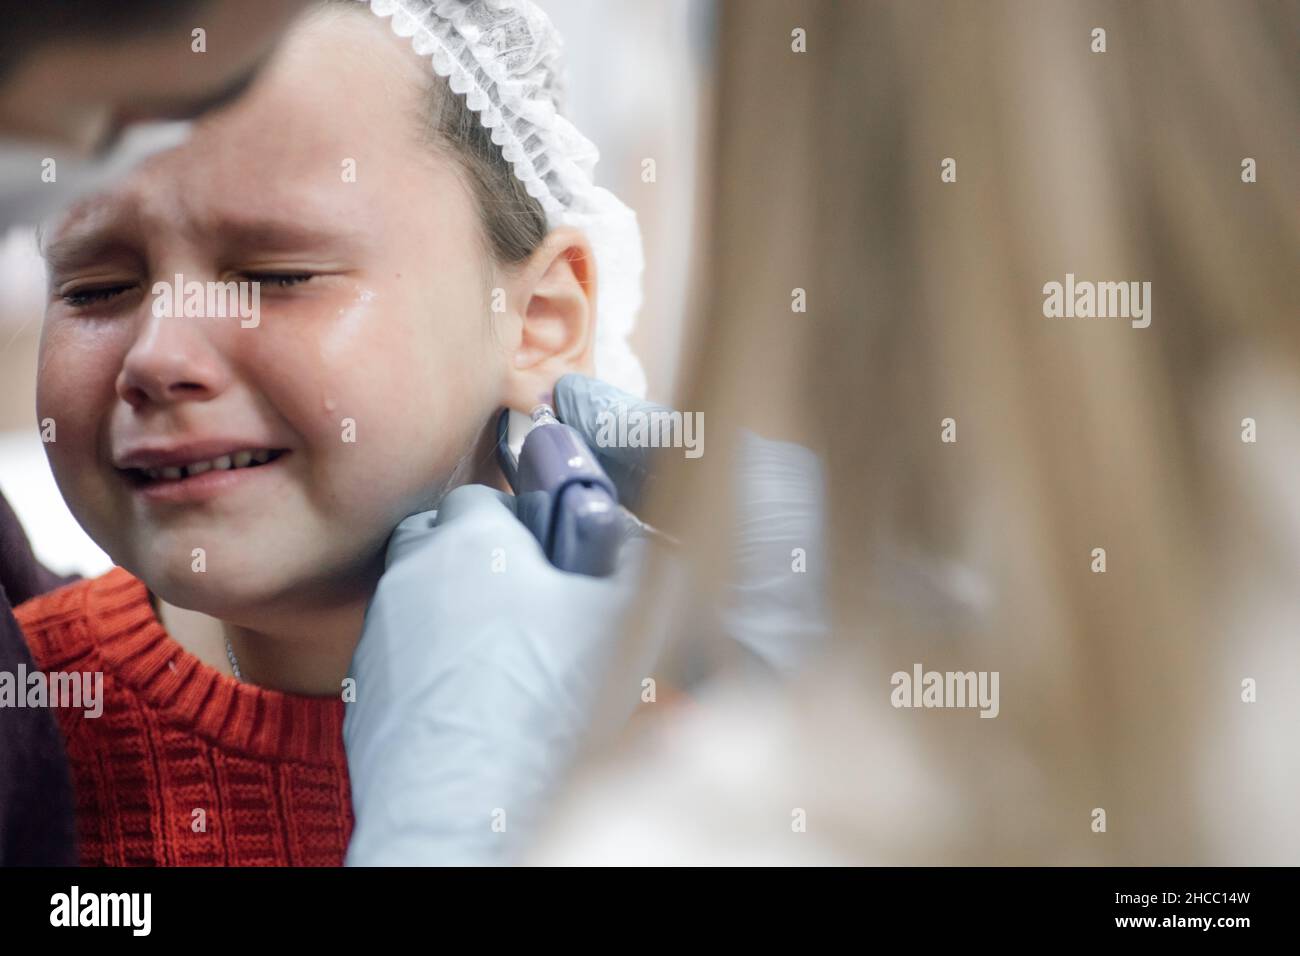 Cosmetologo indossare guanti medici monouso orecchio perforato con pistola per piercing orecchie di bambino. Bambina che piange nel dolore. Padre sostegno e calma Foto Stock